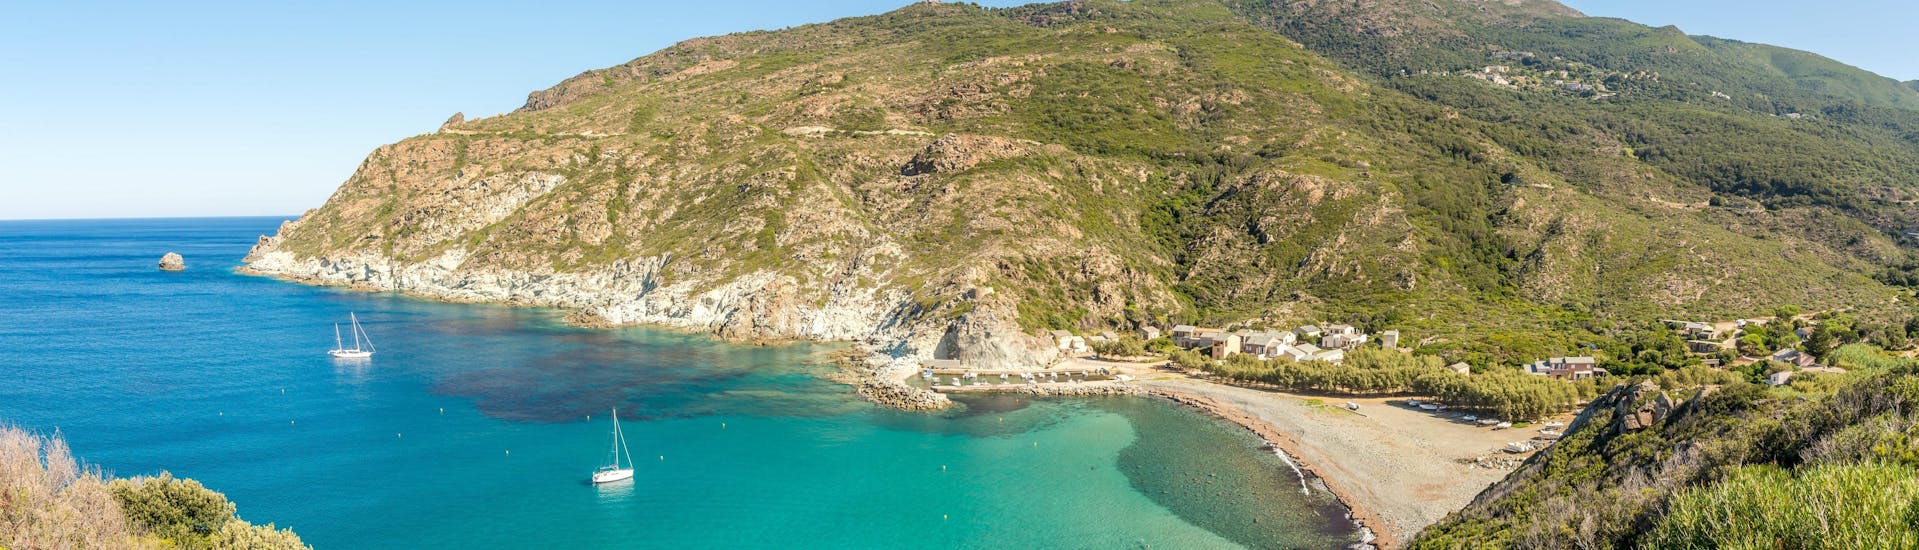 Vue panoramique sur la côte sauvage de la Haute-Corse, un endroit merveilleux à explorer avec une excursion en bateau. 